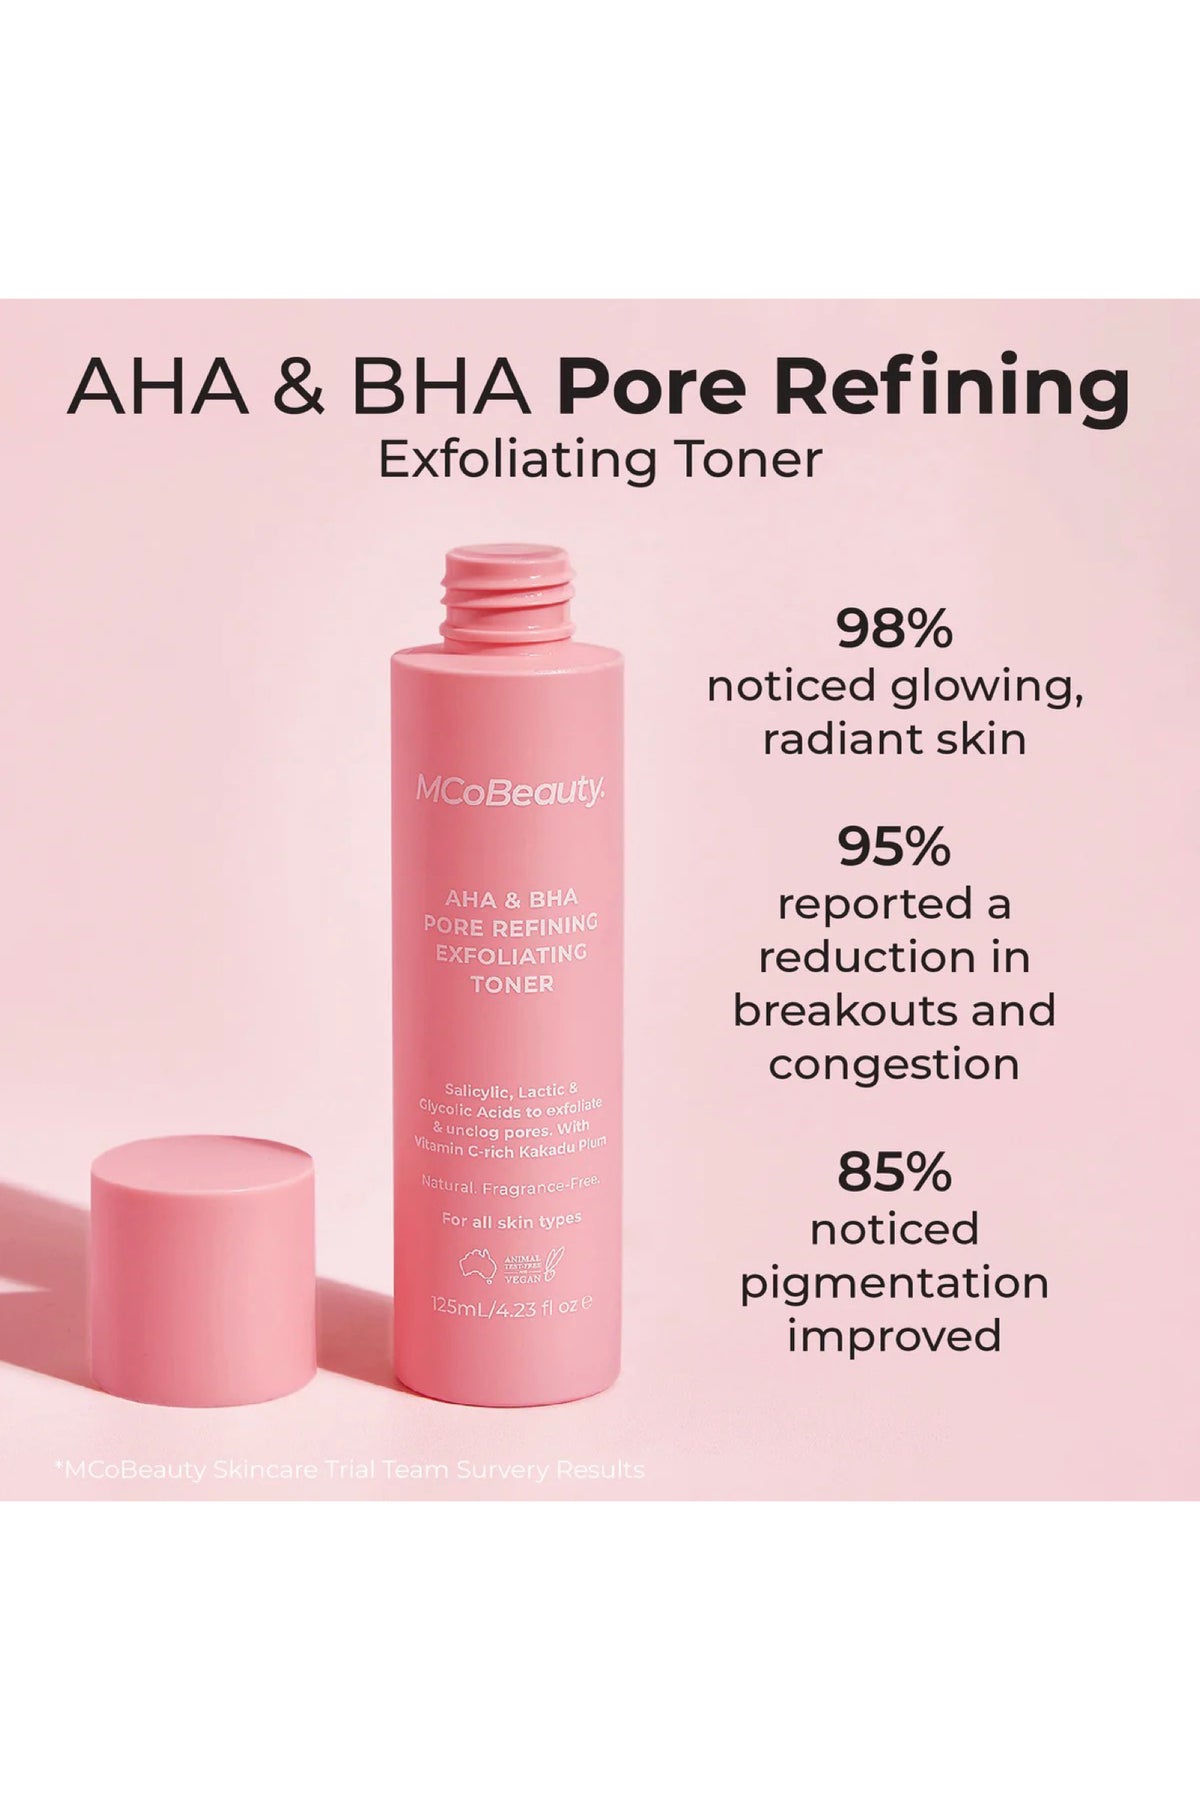 AHA & BHA Pore Refining Exfoliating Toner